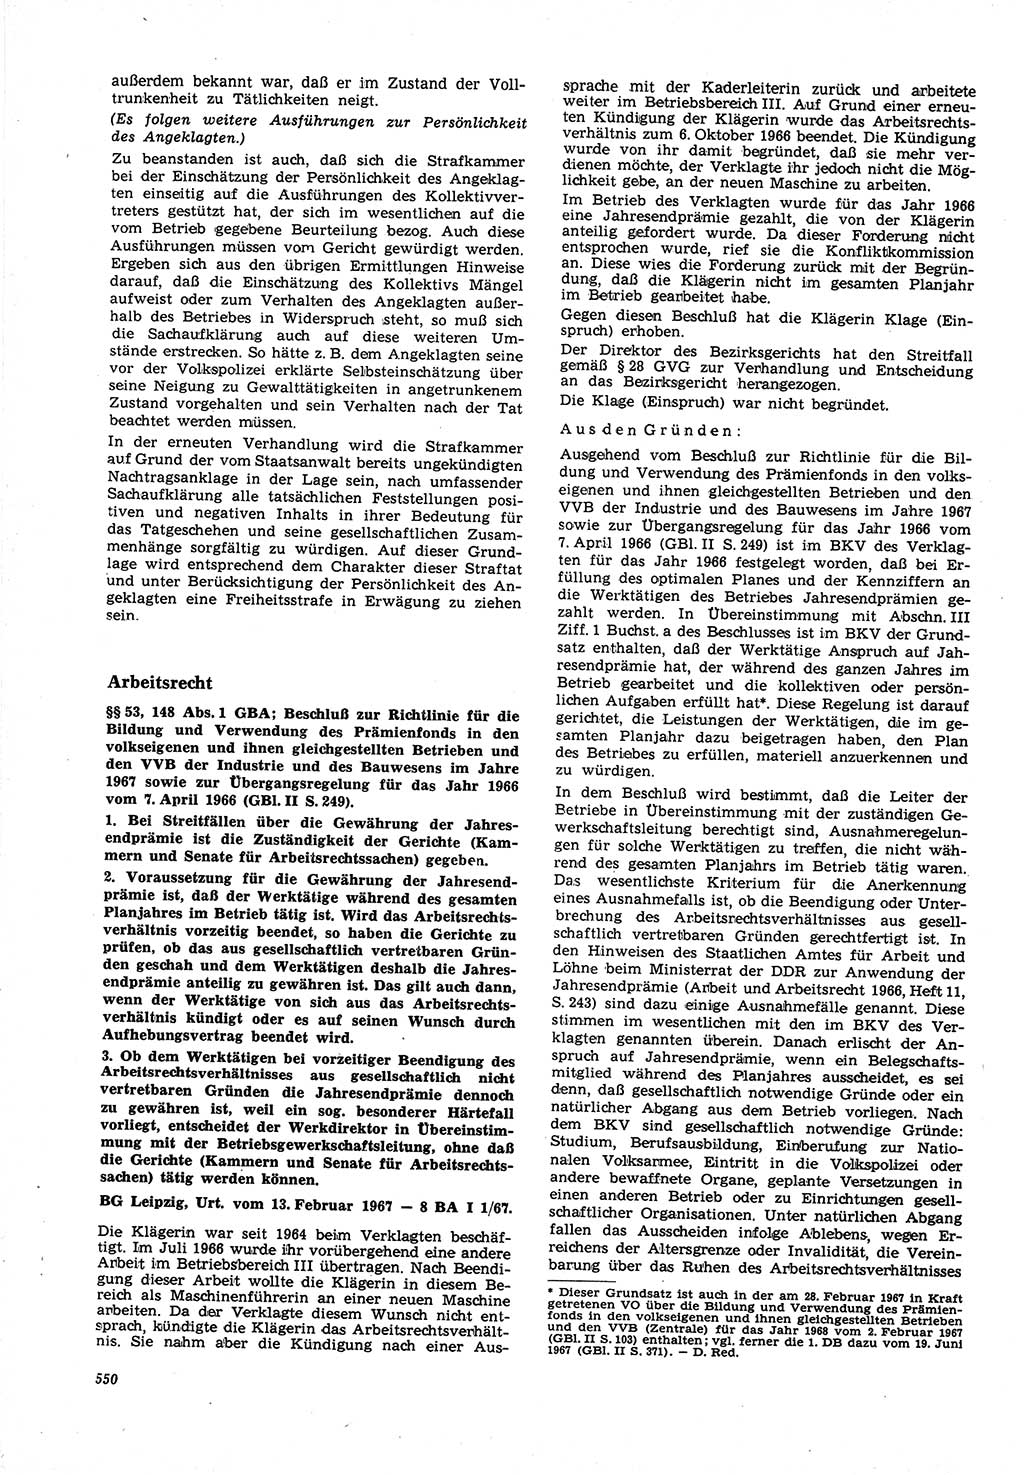 Neue Justiz (NJ), Zeitschrift für Recht und Rechtswissenschaft [Deutsche Demokratische Republik (DDR)], 21. Jahrgang 1967, Seite 550 (NJ DDR 1967, S. 550)